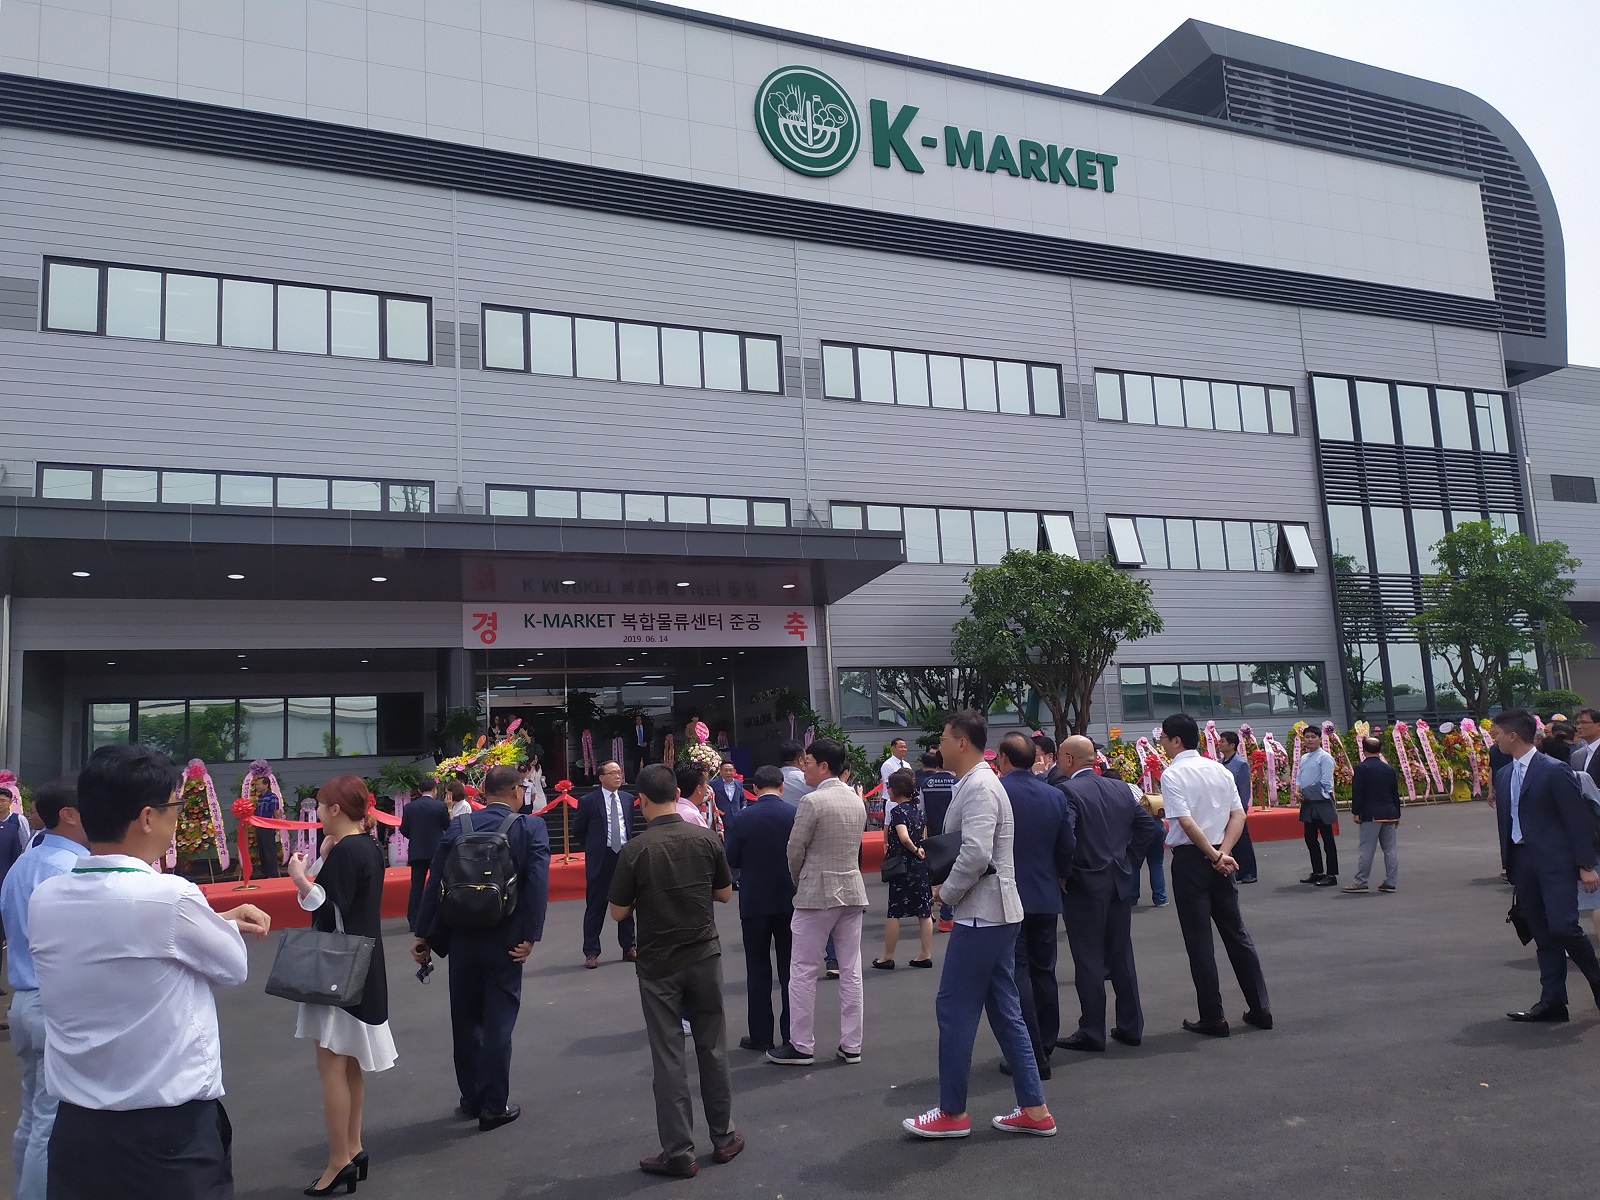 Bộ dàn âm thanh ánh sáng sân khấu hội trường: K-Market siêu thị Hàn Quốc, Hà Nội